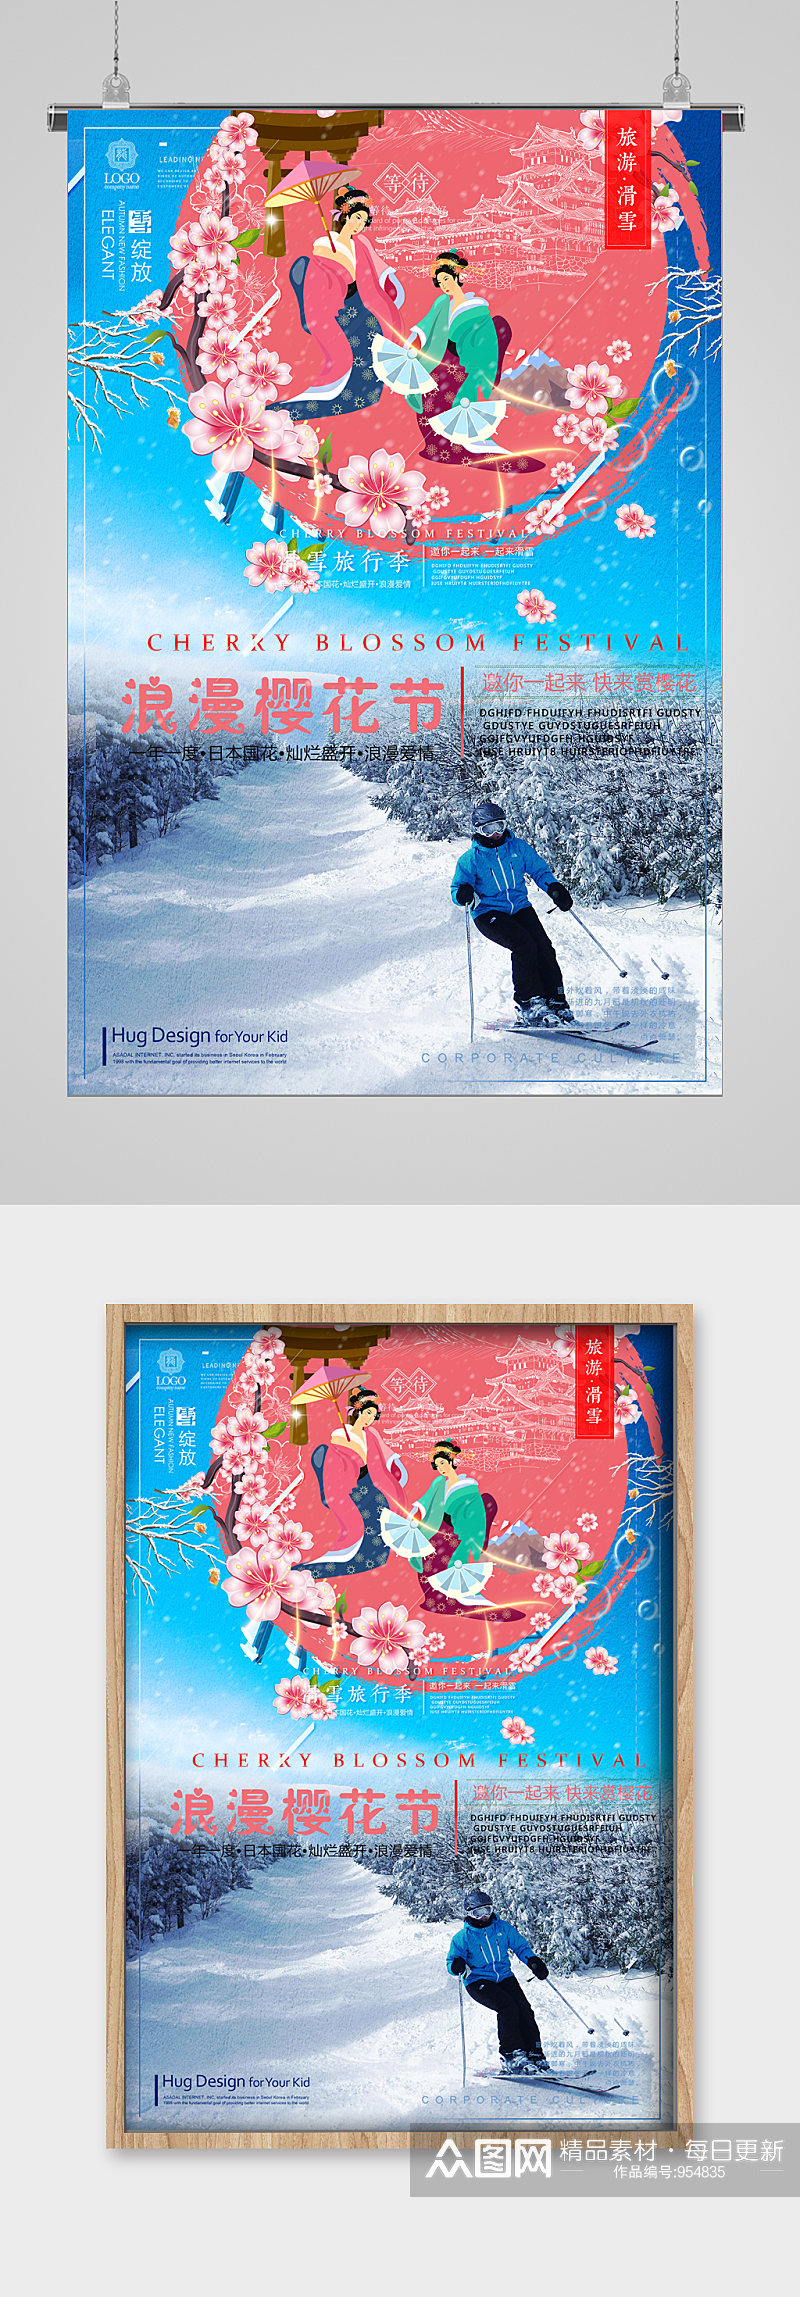 冬季滑雪樱花节宣传海报素材